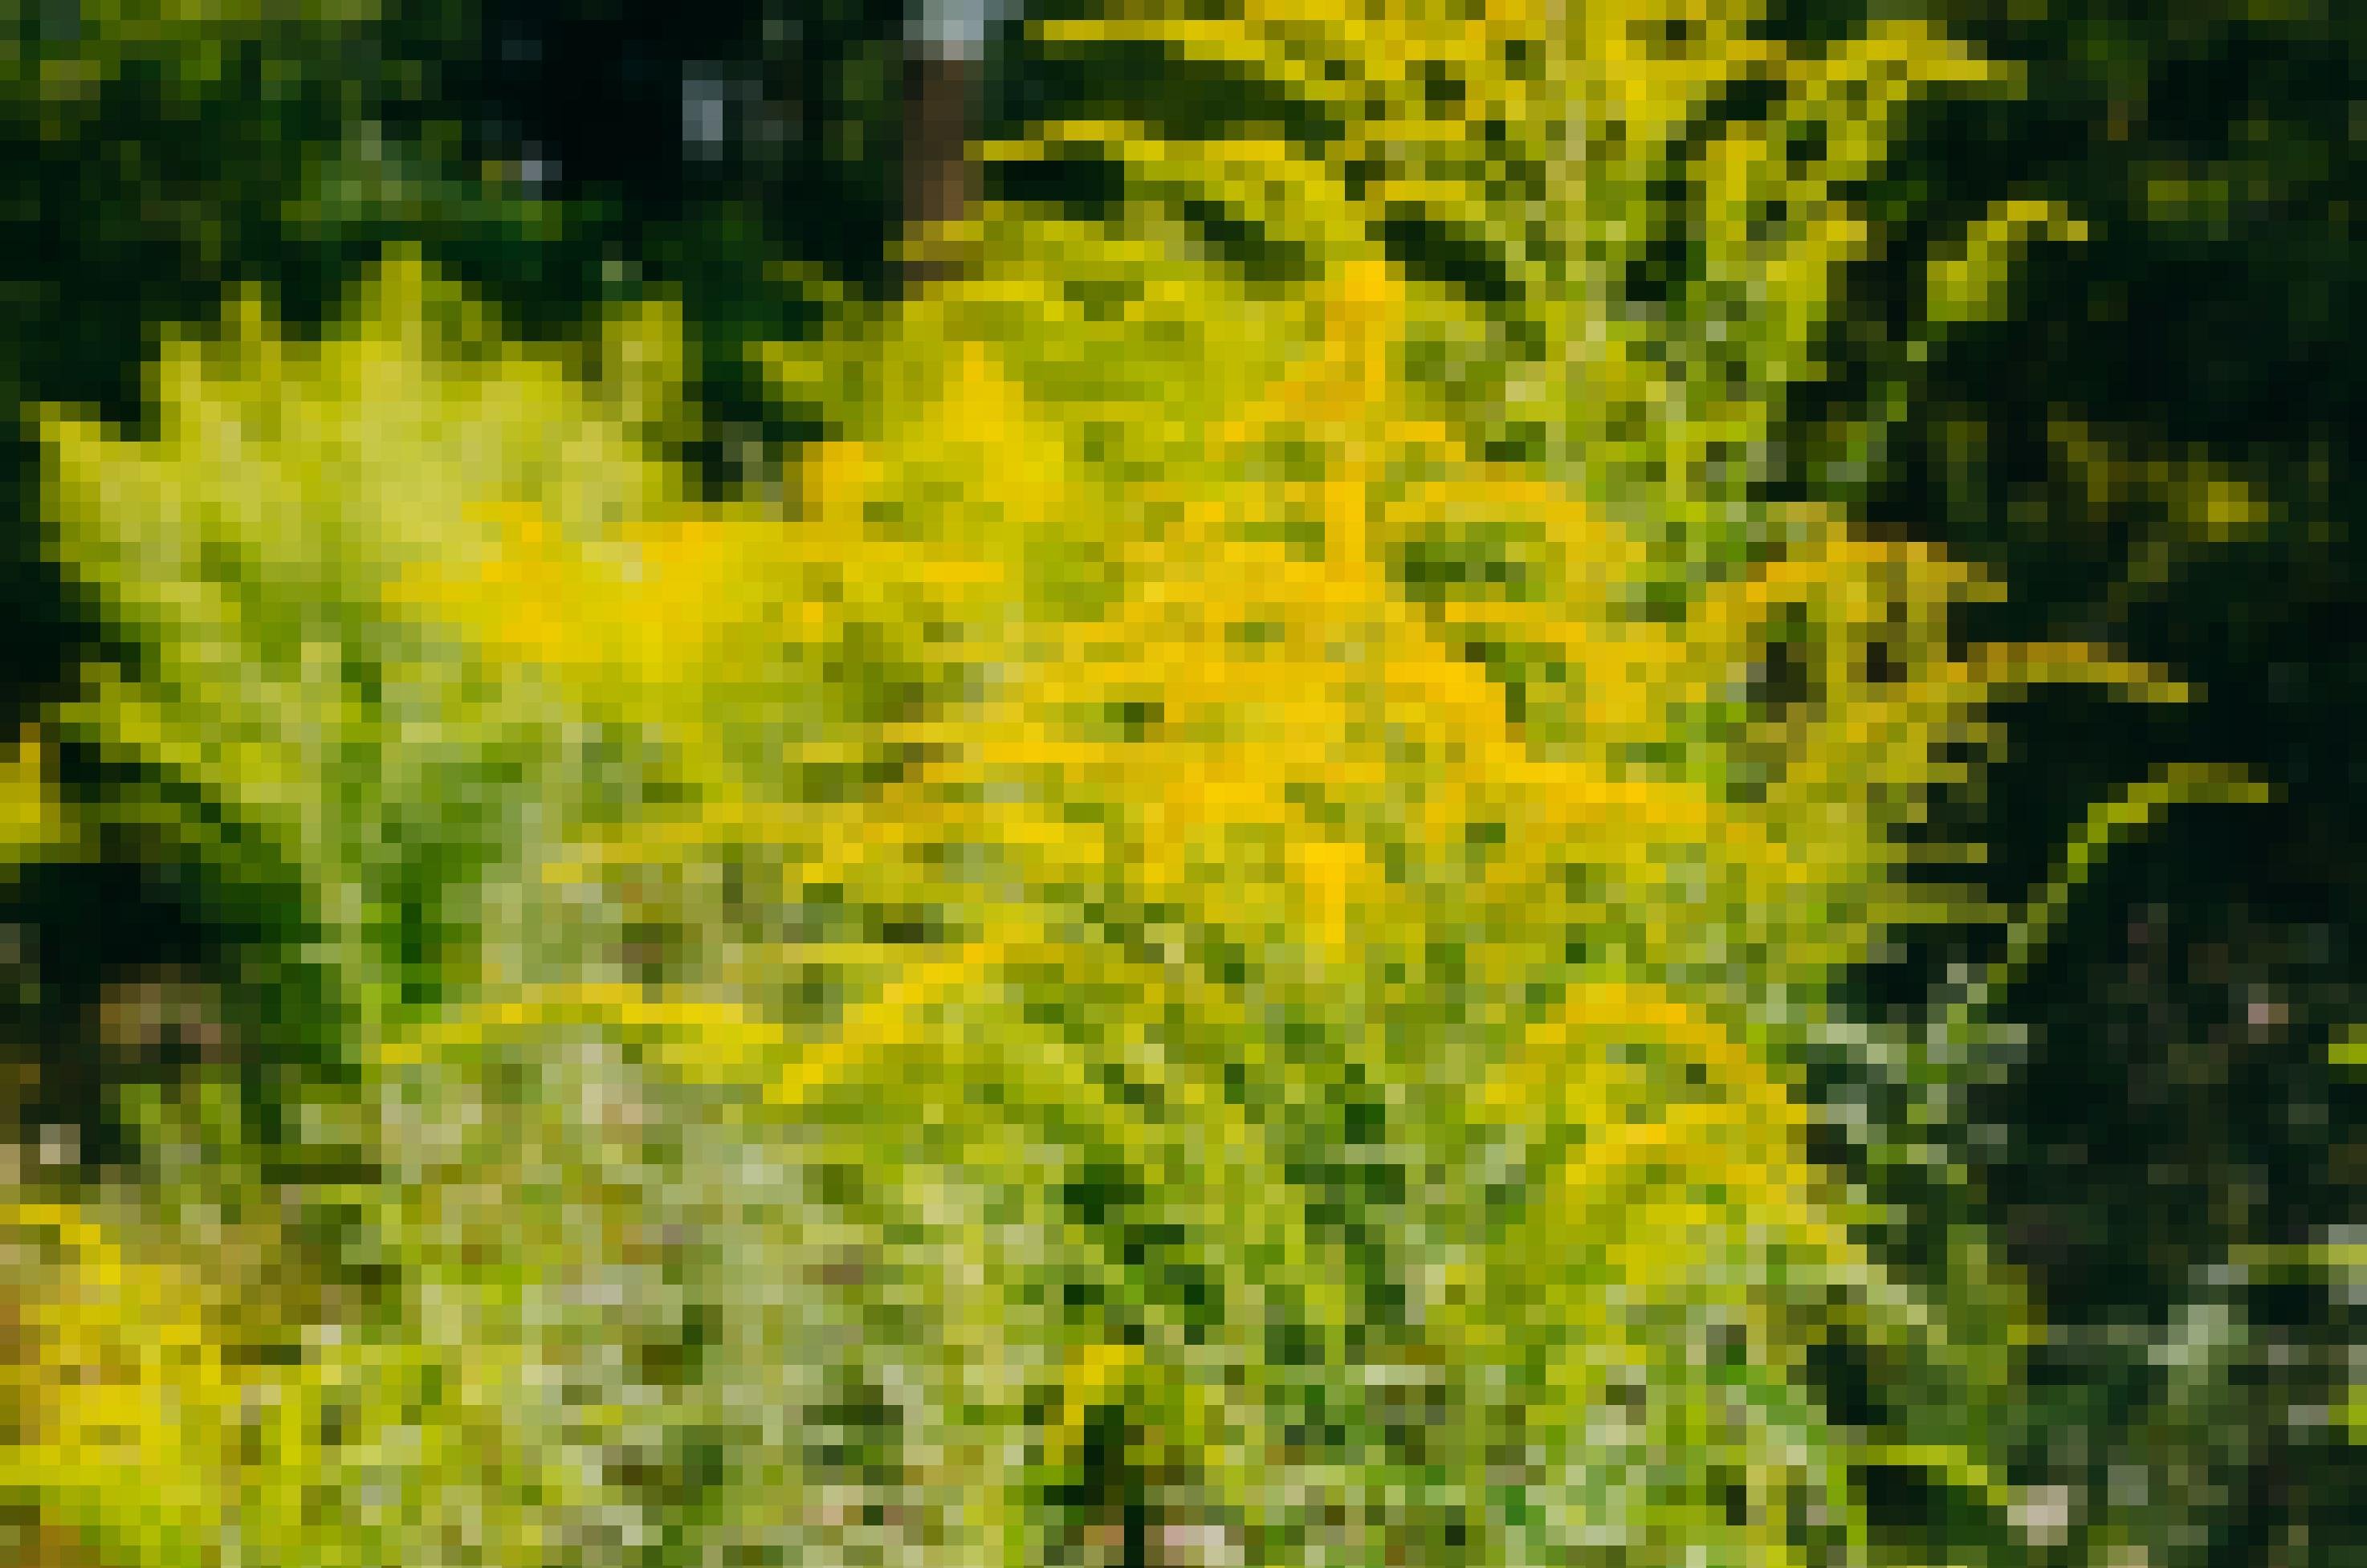 Das Bild zeigt gelb blühende Ambrosia. Der Pollenflug der eingeschleppten Ambrosia setzt im Hochsommer ein. Durch ihr hohes allergisches Potenzial kann Ambrosia Reizungen der Atemwege bis hin zu einem Asthma-Anfall auslösen. Bei der Berührung der haarigen Stiele kann es außerdem zu einer Kontaktallergie kommen. Viele Pflanzen finden sich häufig in der Nähe von Vogelhäuschen, da in Futter mit Sonnenblumenkernen oft Ambrosiensamen enthalten sind. Das kommt daher, dass Ambrosien oft auf Sonnenblumenfeldern als „Ackerunkraut“ vorkommen. Wer einen großen Ambrosia-Bestand entdeckt, sollte das der zuständigen Behörde melden, damit die Pflanzen fachgerecht entsorgt werden können.